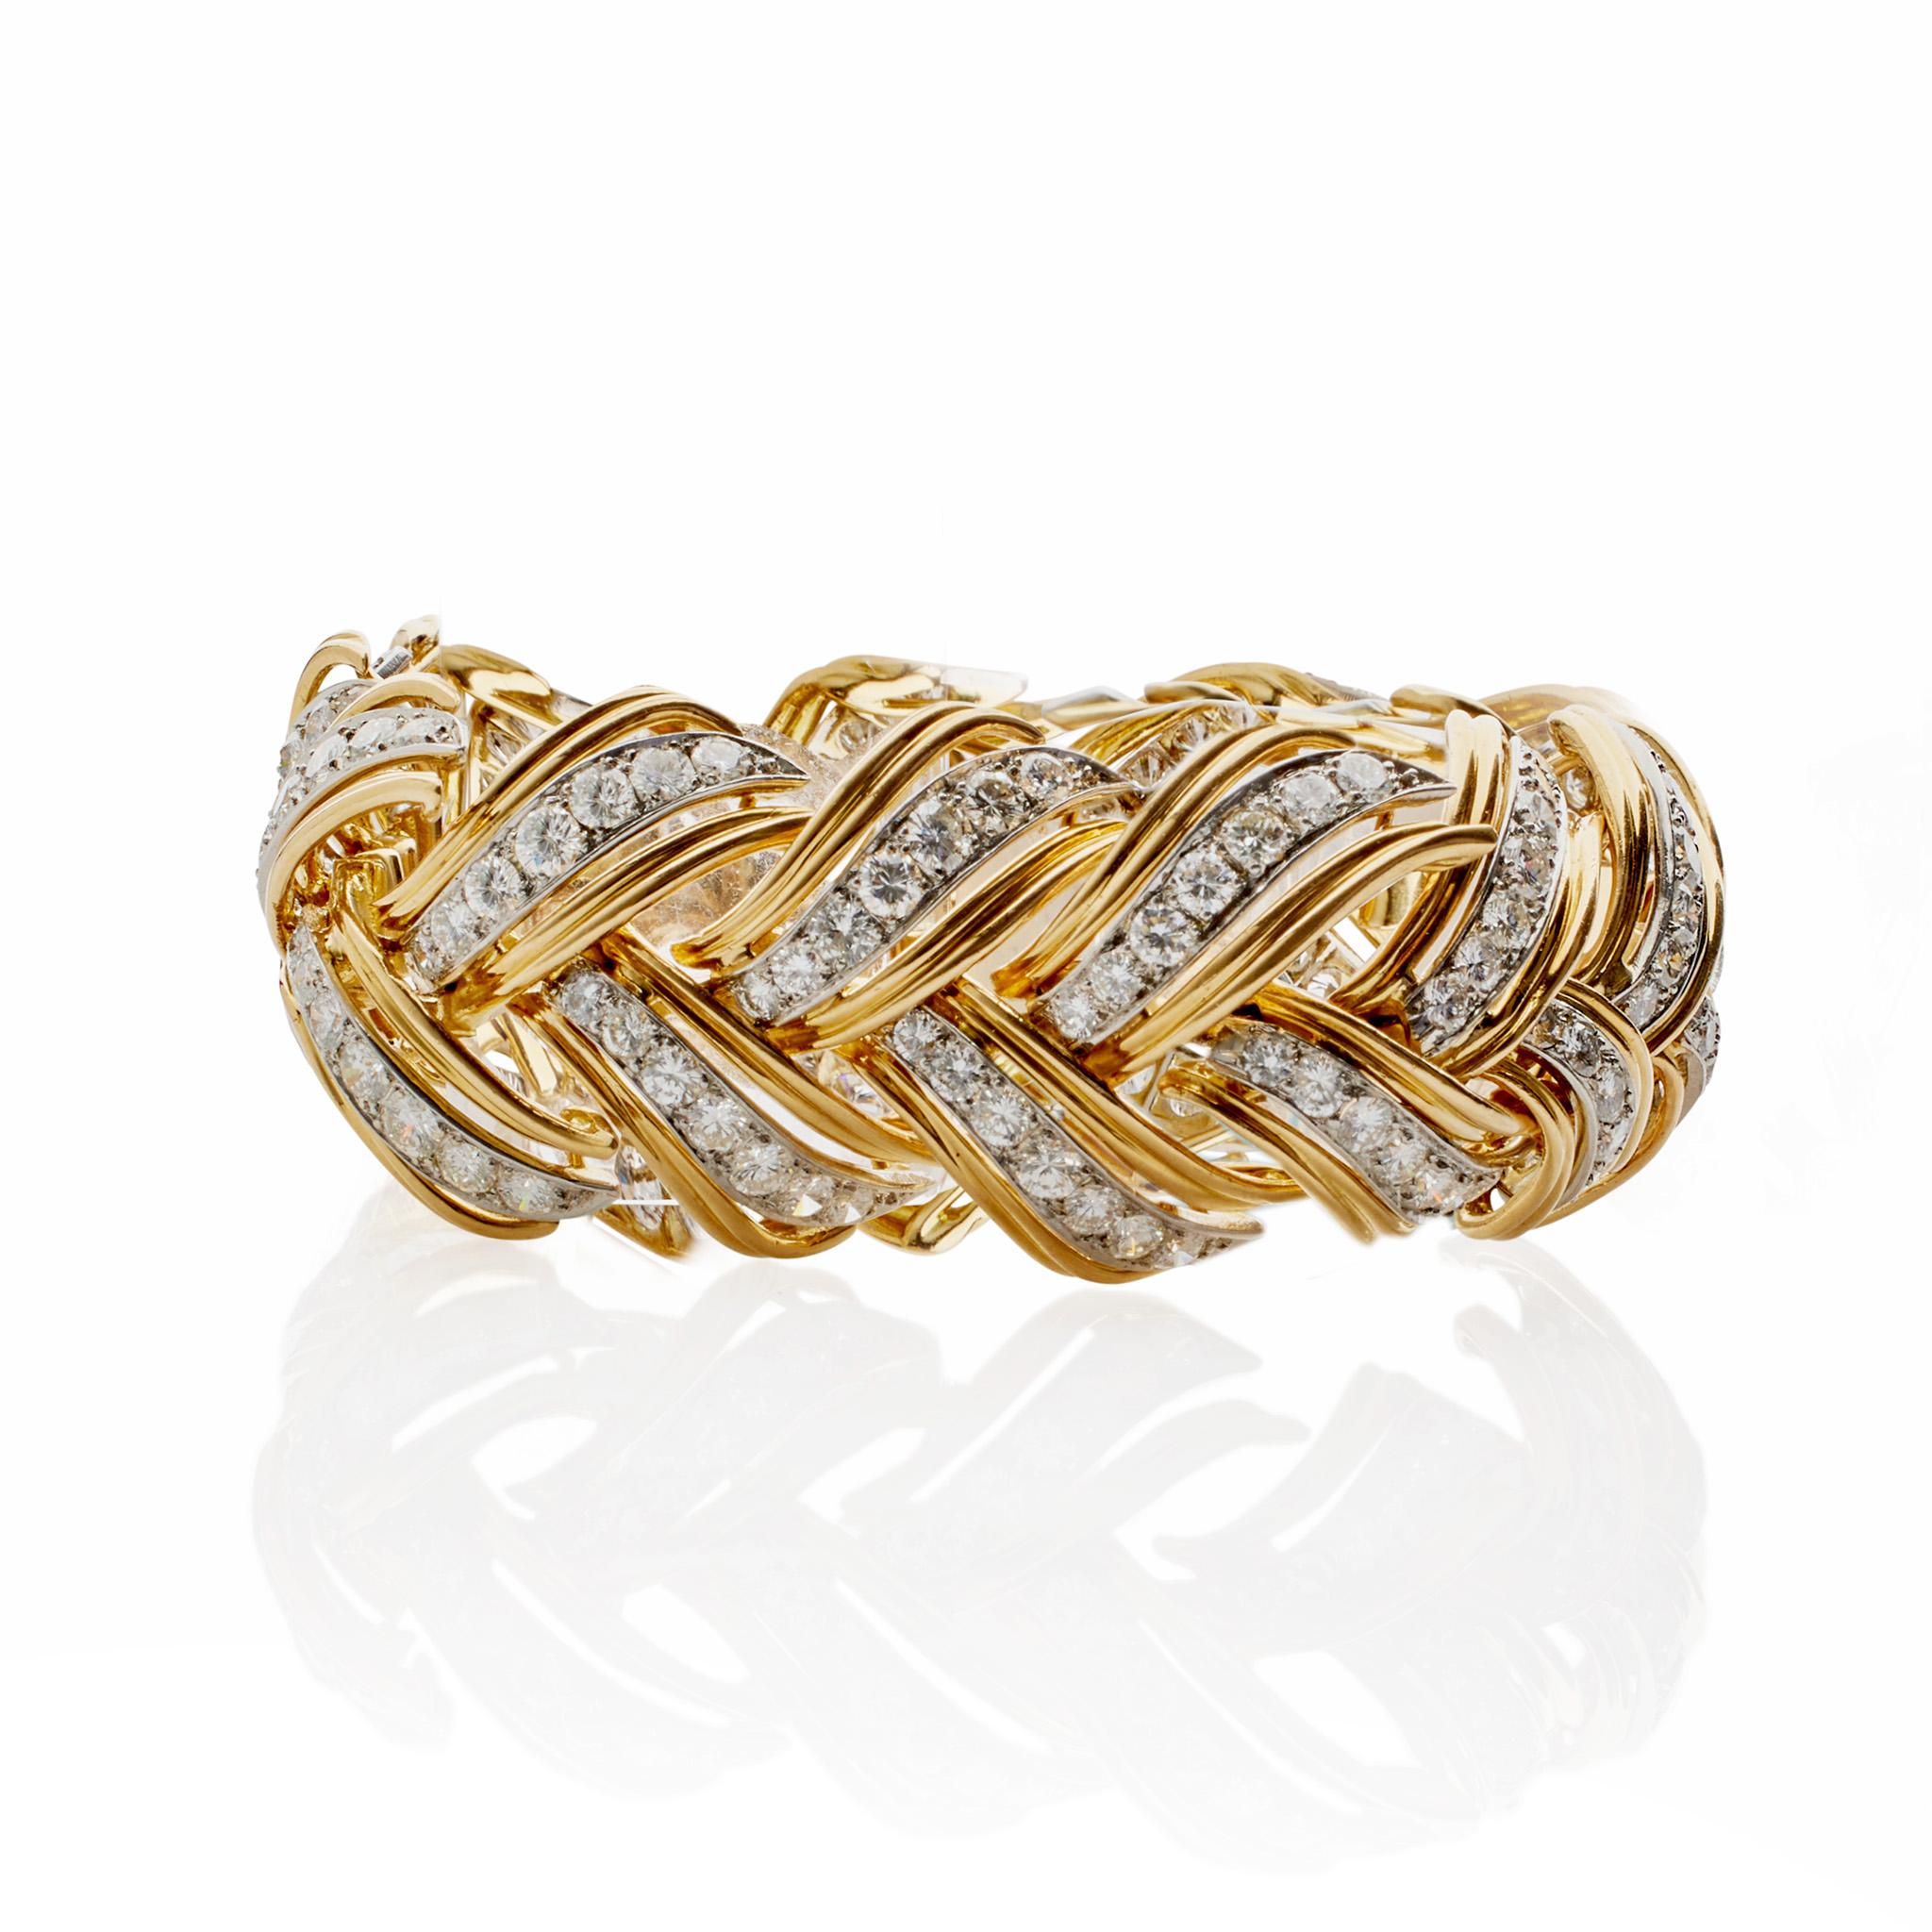 Créé au milieu du XXe siècle, ce bracelet bombé en or 18 carats, platine et diamants a été réalisé à Paris, en France, par André Vassort. Serti de plus de 14,00 carats de diamants, le bracelet bombé articulé est conçu comme une série de feuilles